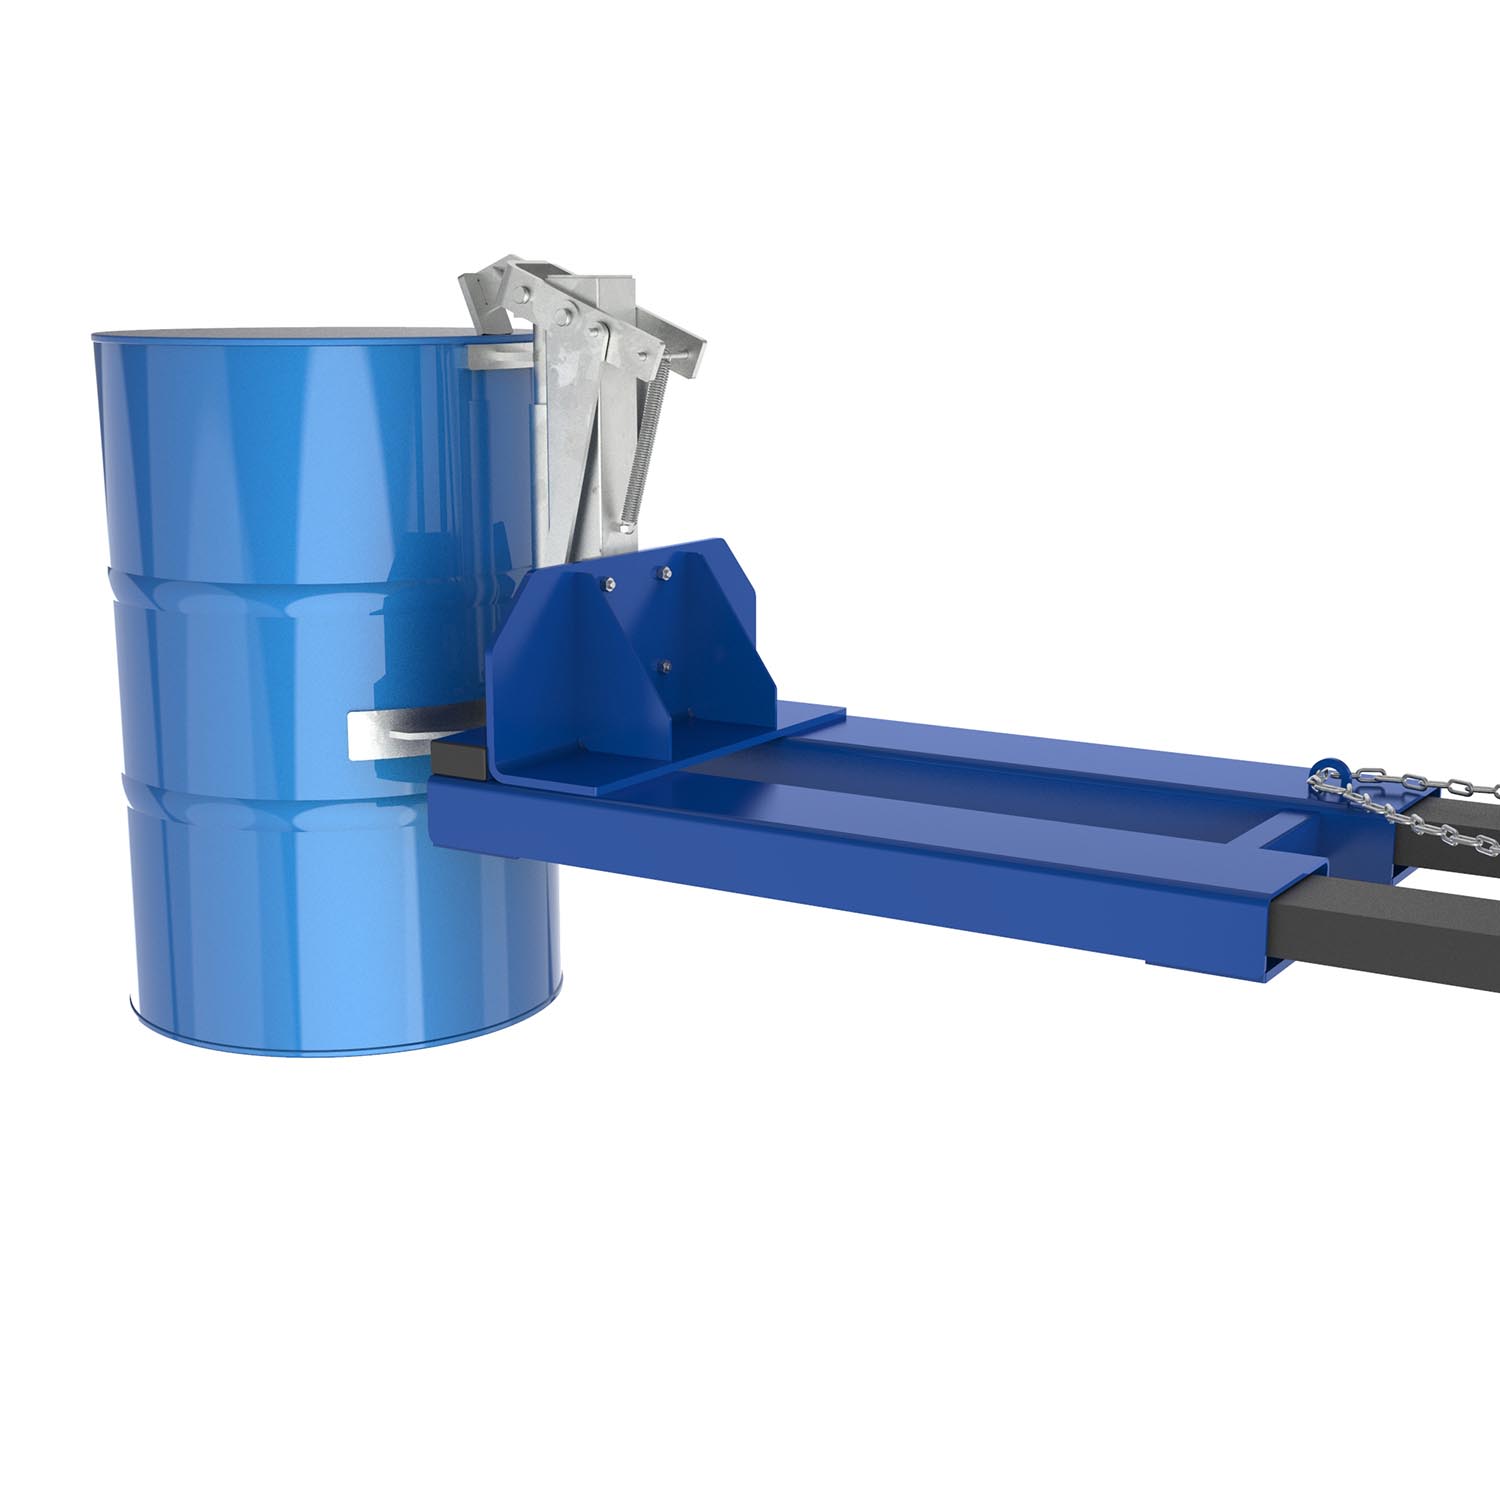 GREIFFIX-Fassgreifer für die 1-Fassaufnahme von 200 l Fässern, Stapleranbaugerät